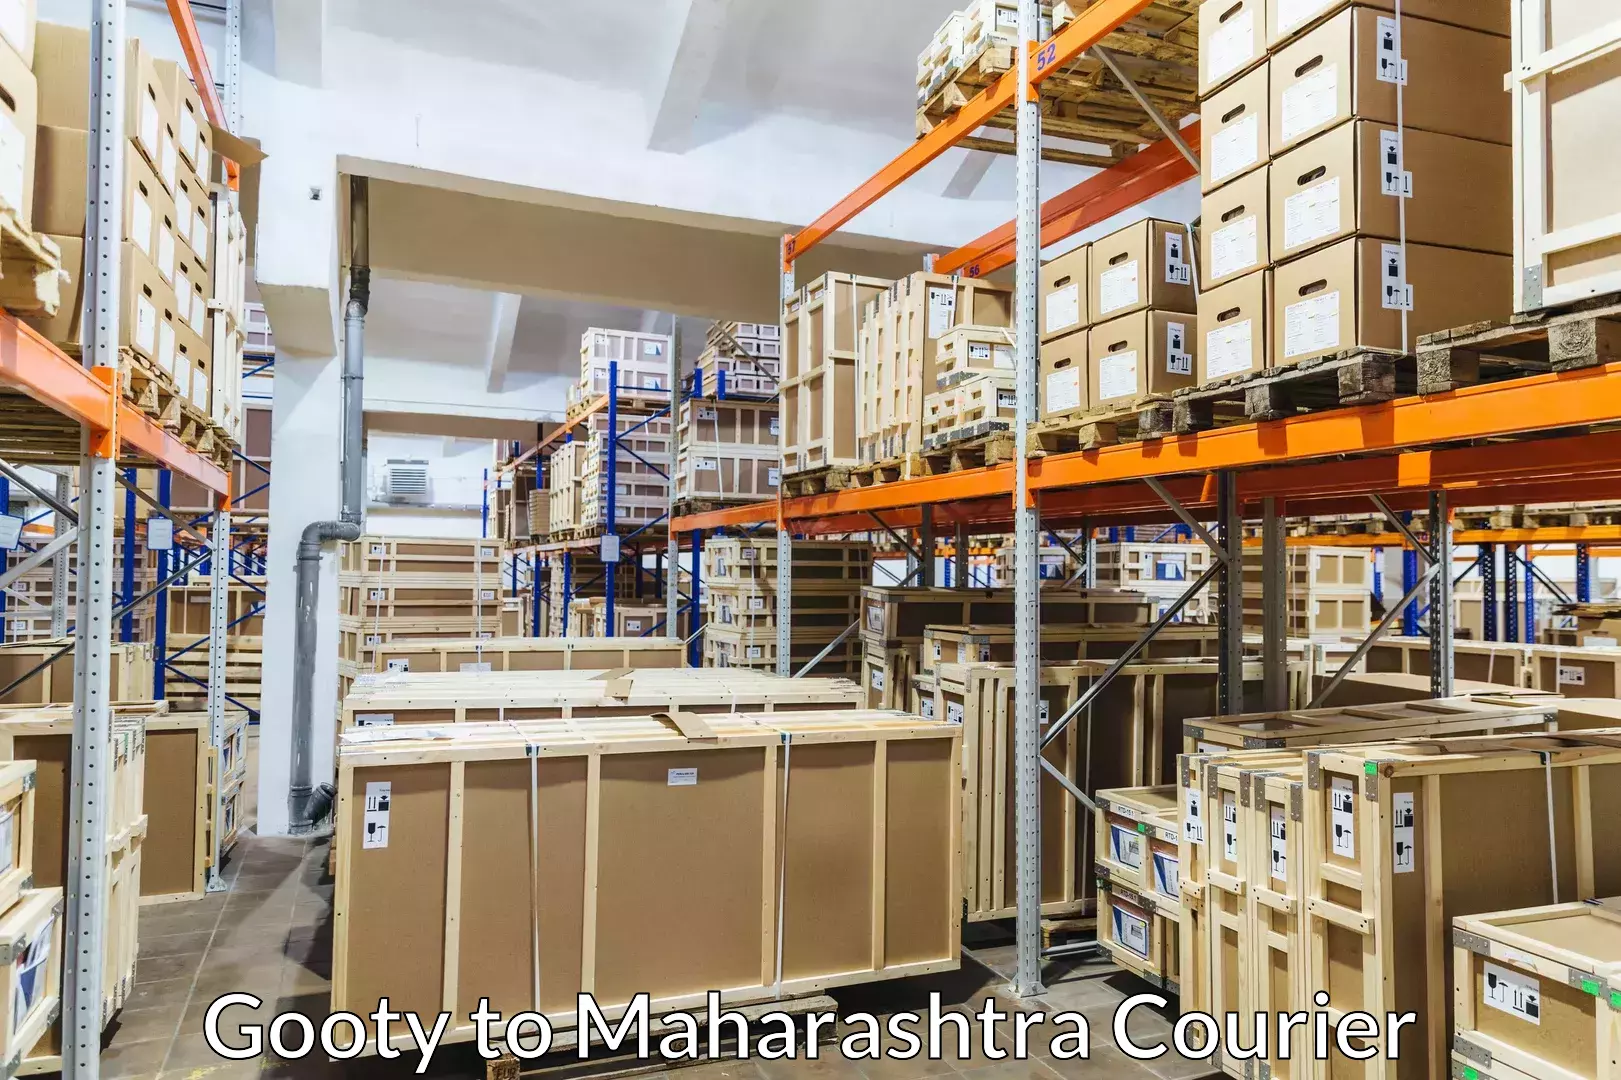 Furniture transport company Gooty to Yeola